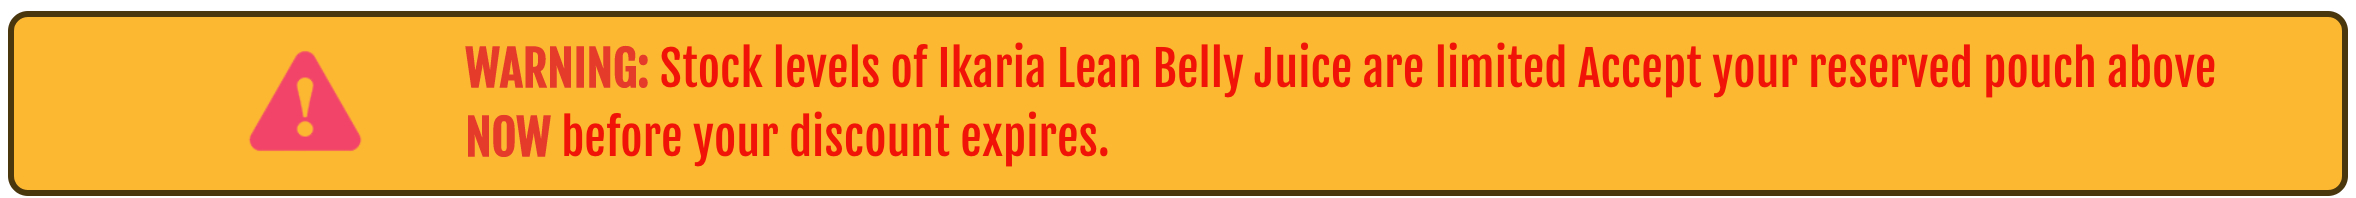 ikaria-lean-belly-juice - WARNING